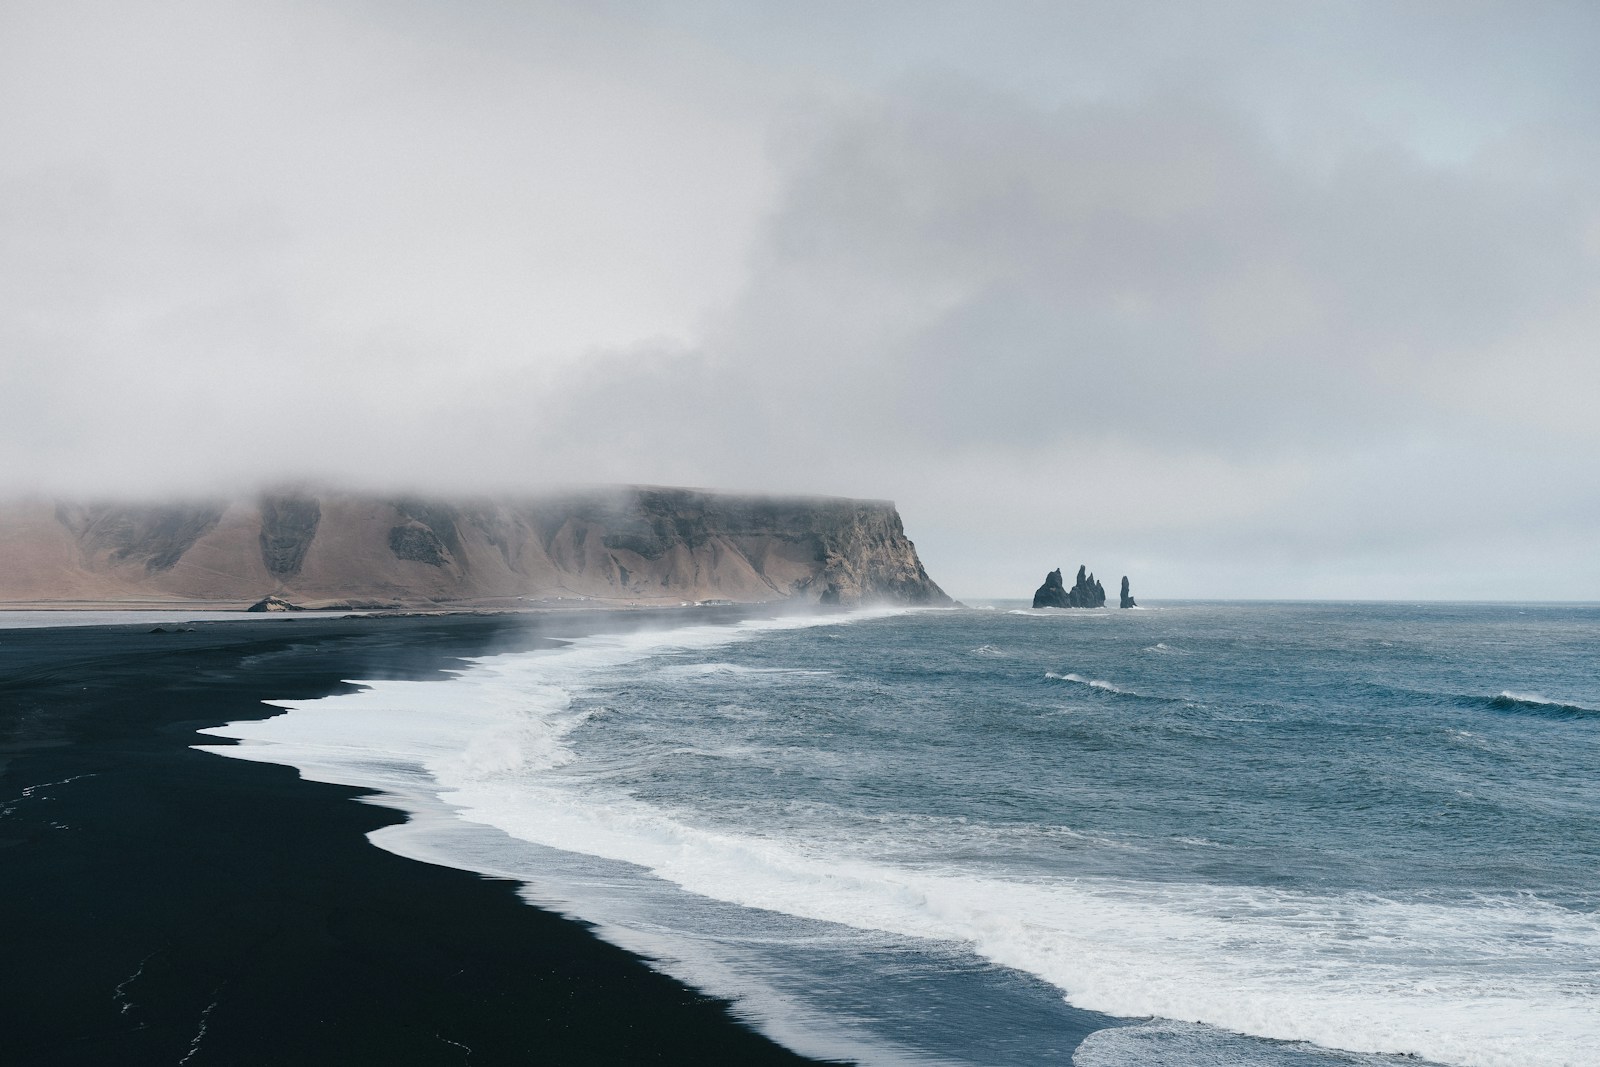 voyage de noces islande : conseils et itinéraires